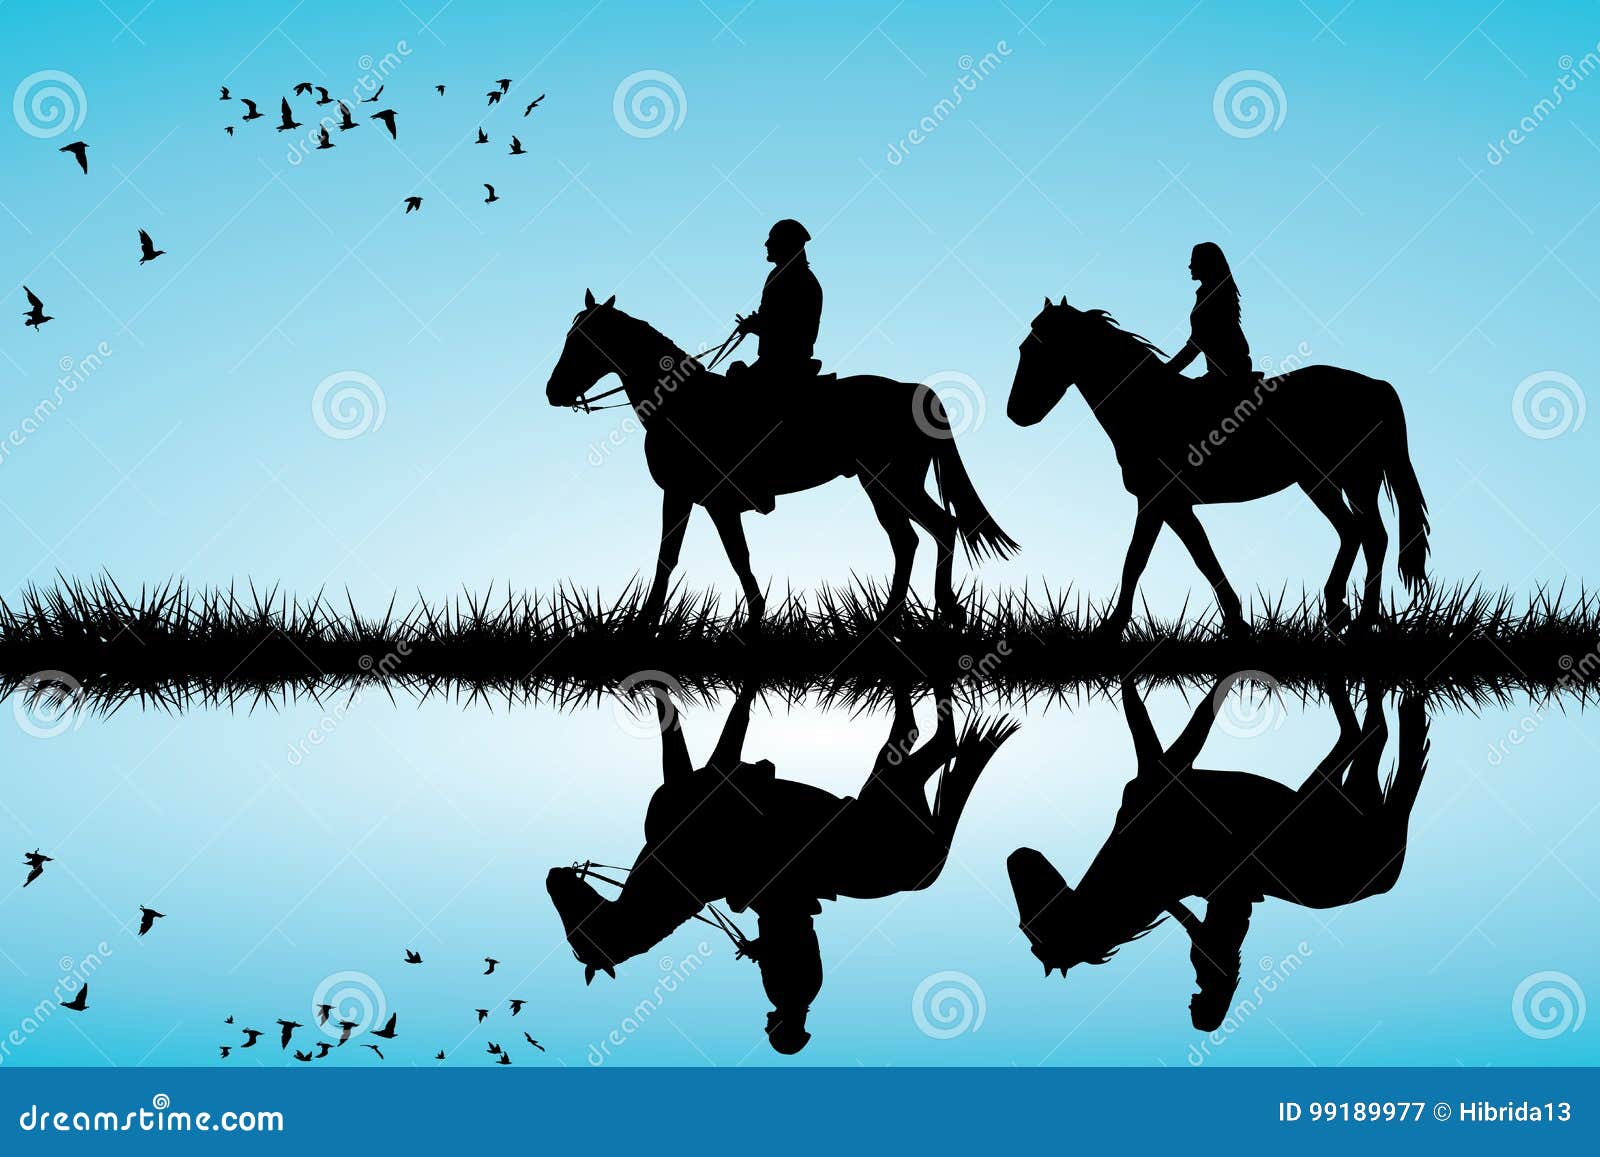 eventos equestres. ilustração de um cavalo com um cavaleiro pulando a  barreira das cabanas de madeira. um cavaleiro em um cavalo salta sobre um  obstáculo contra uma ilustração vetorial plana de nuvem